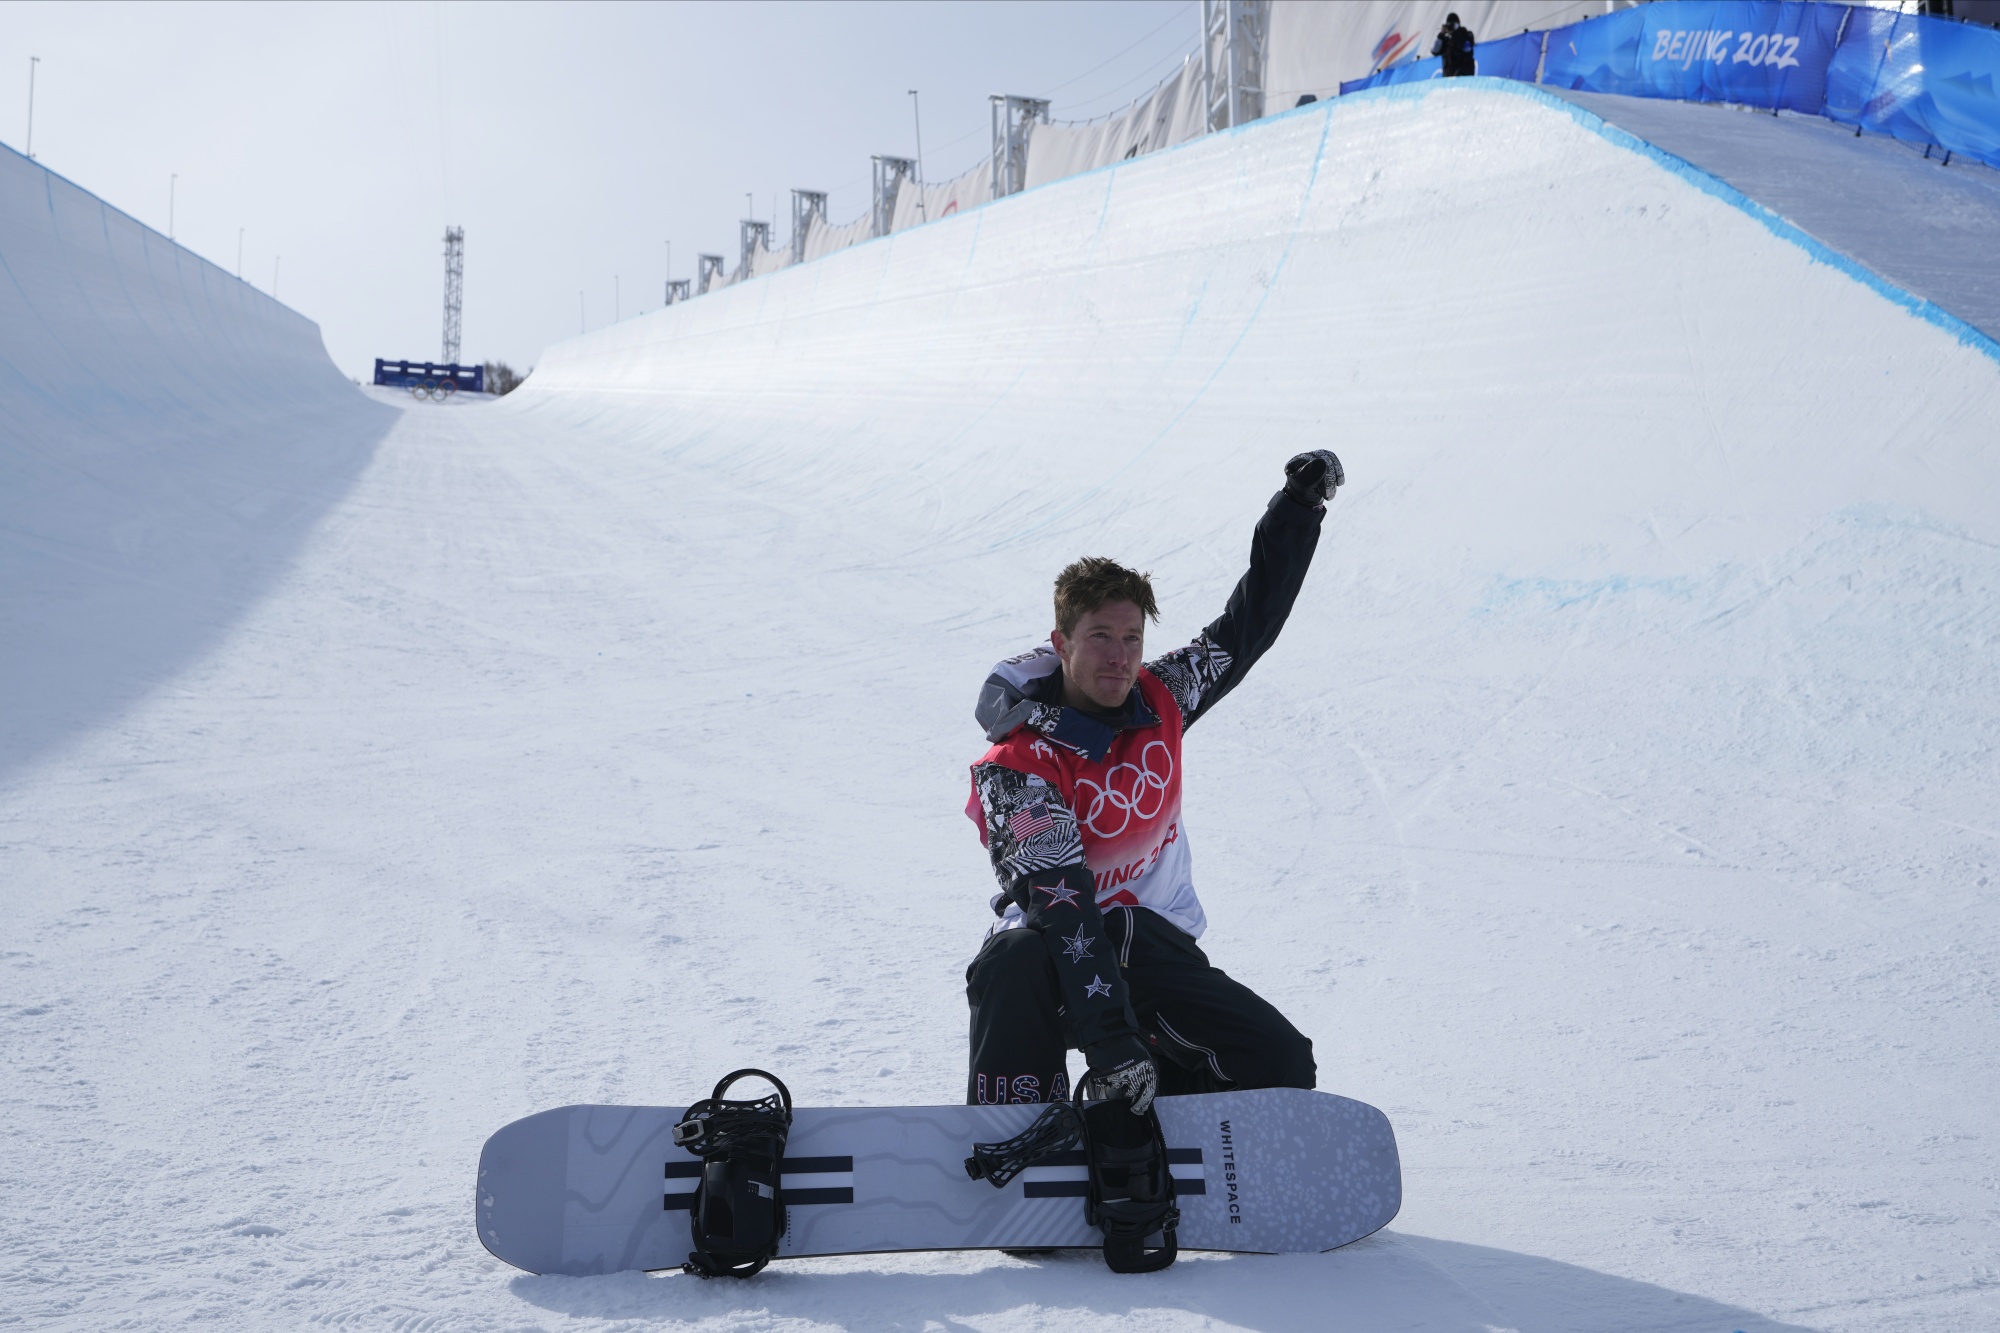 Shaun Whites Next Mountain Businessman, Snowboard Maker